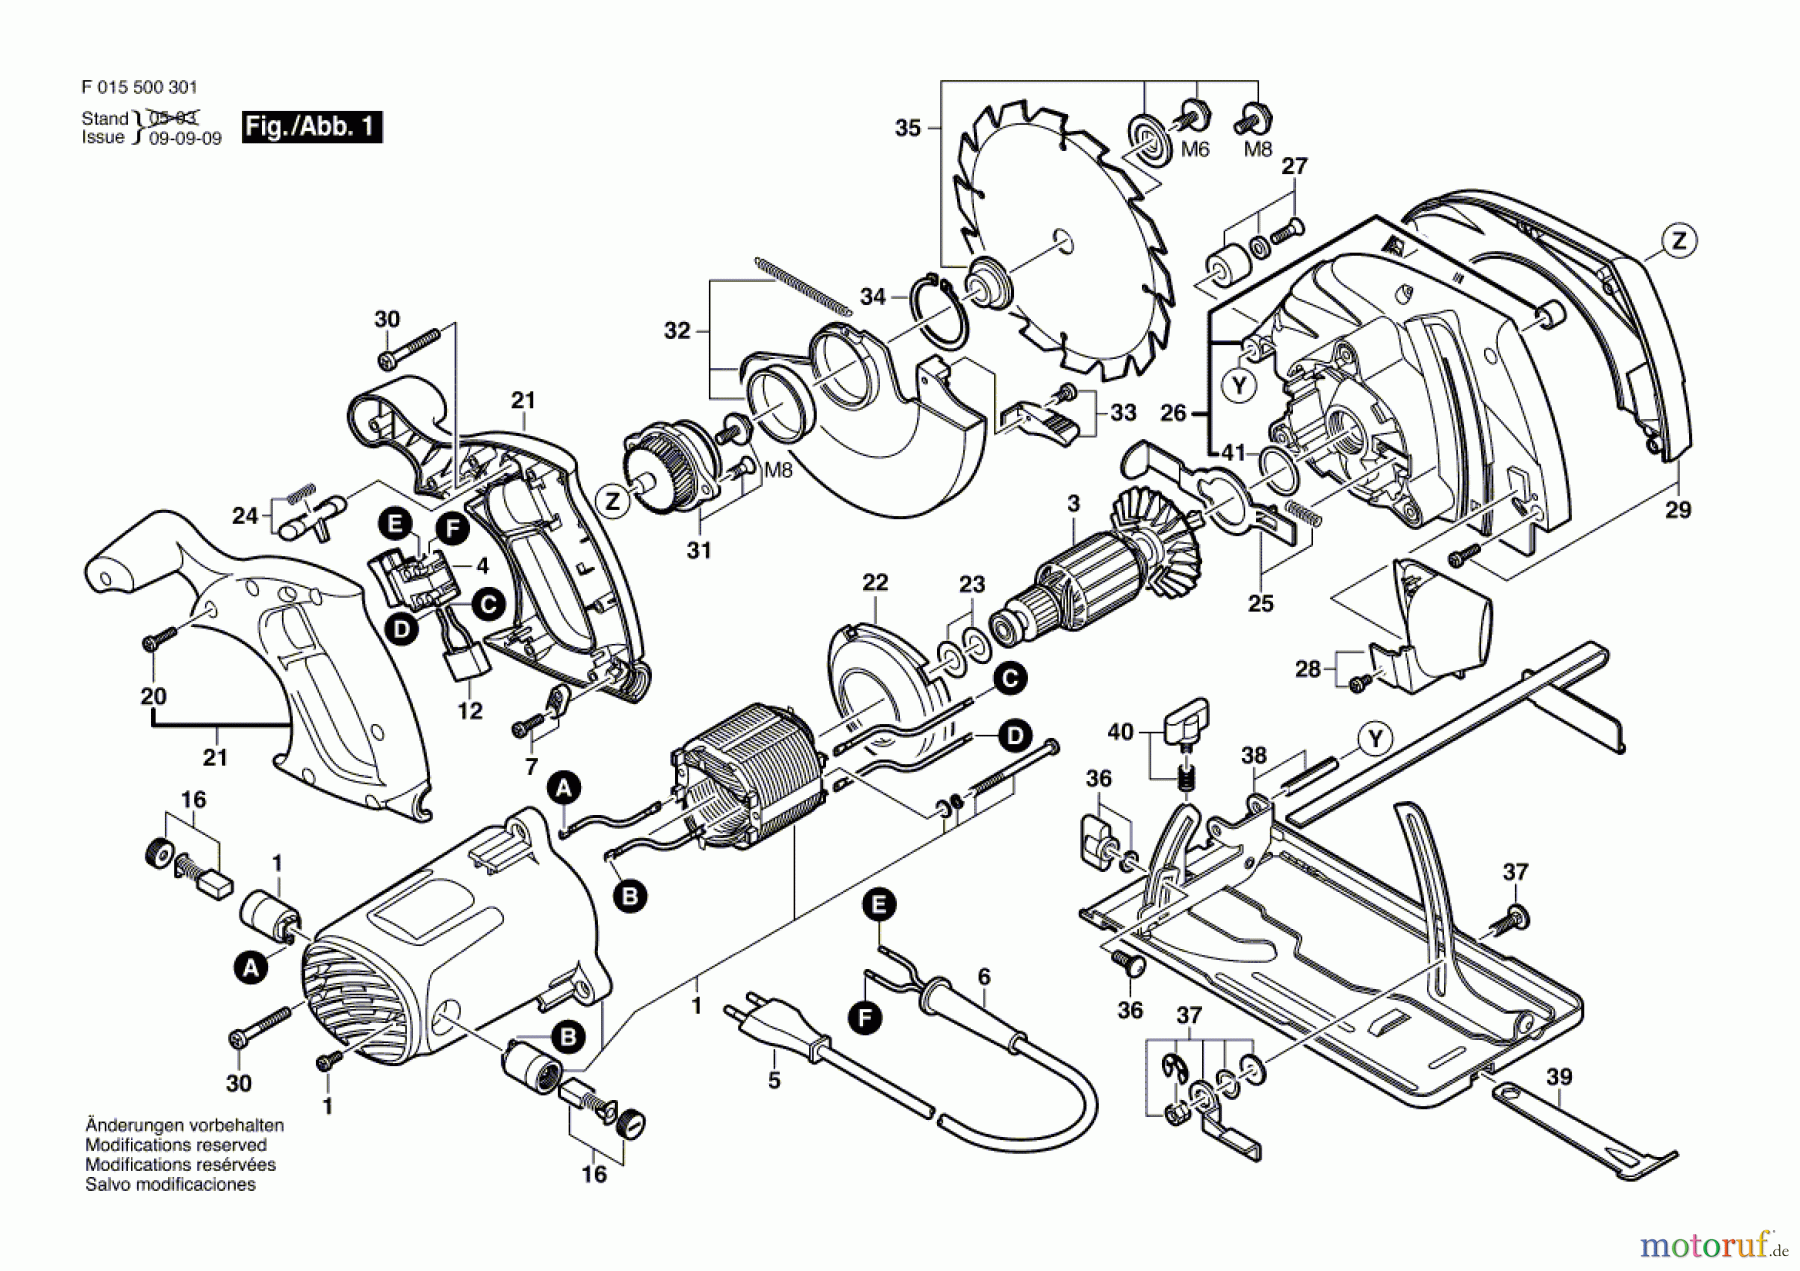  Bosch Werkzeug Handkreissäge 5066 Seite 1